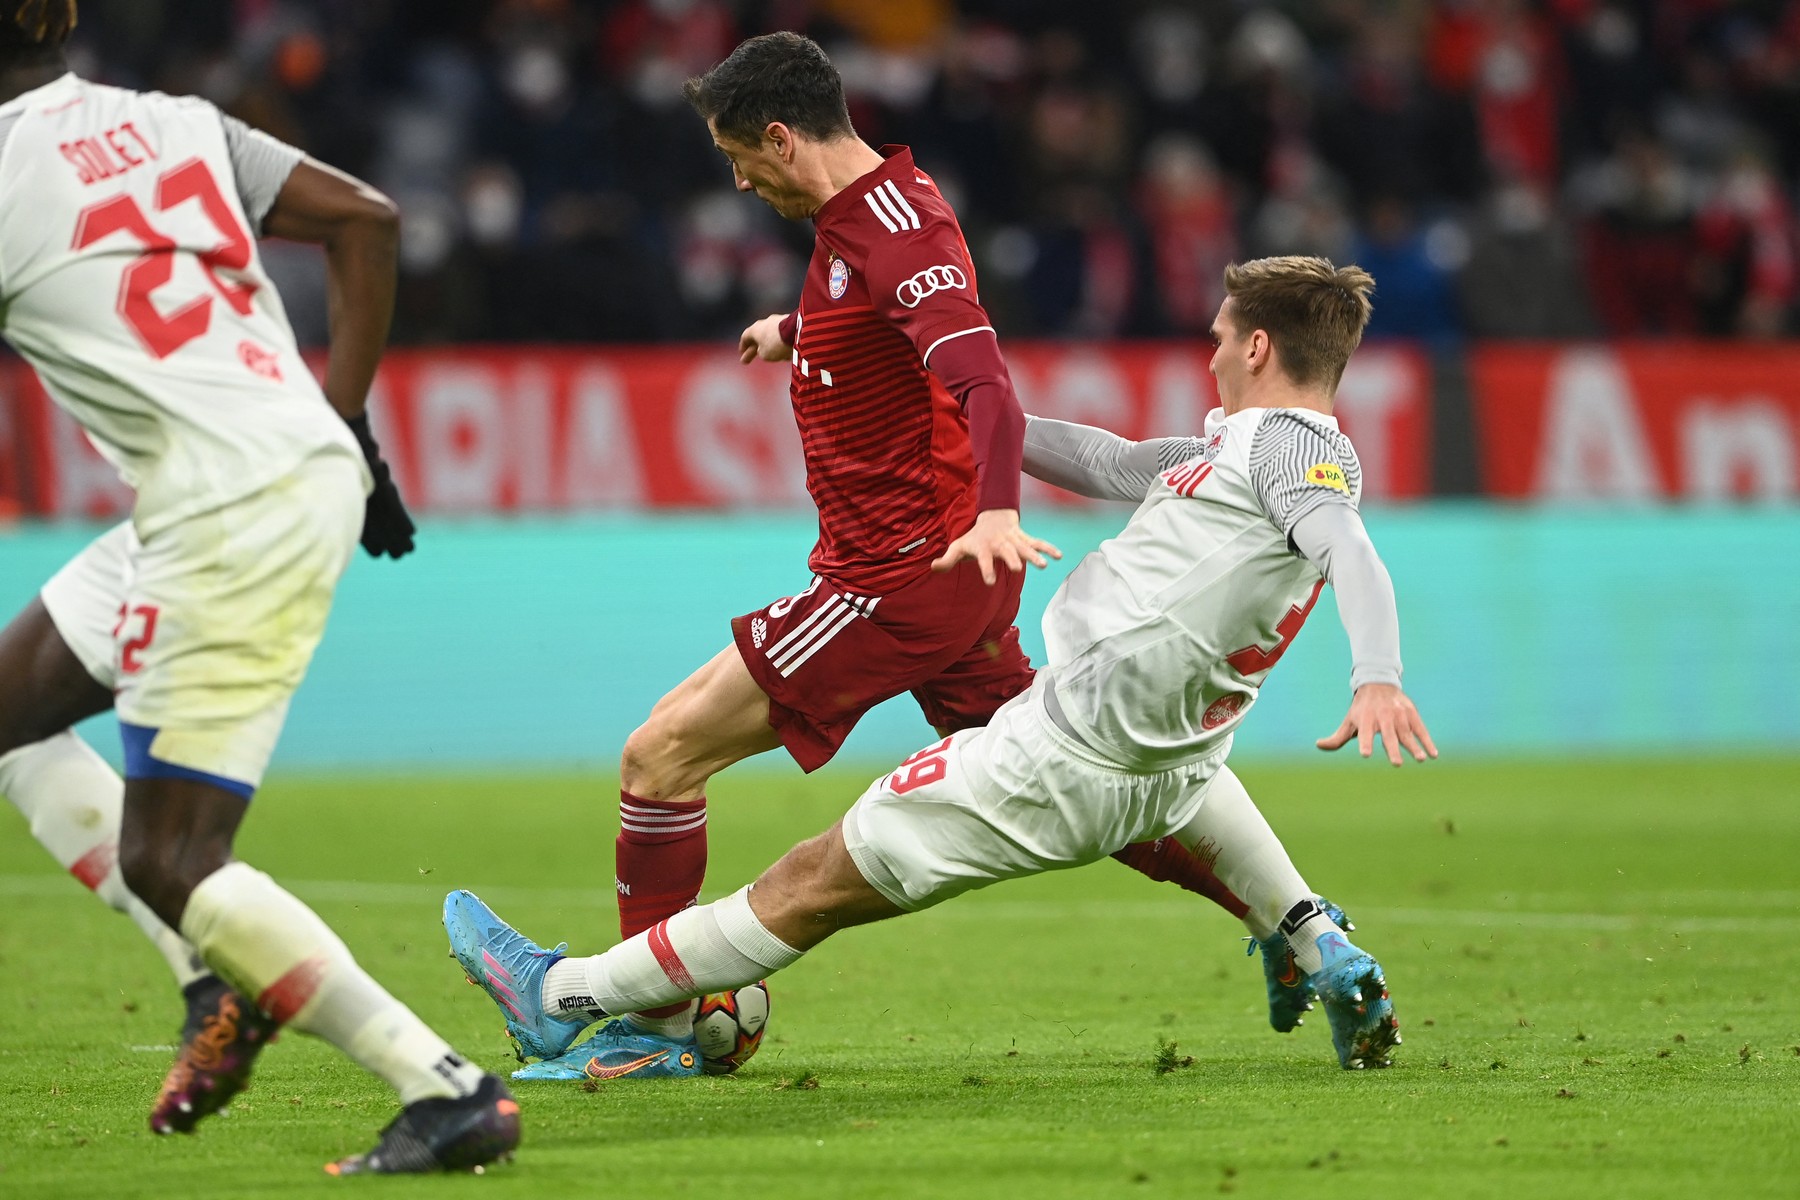 Bayern Munchen - Salzburg 5-1, ACUM, la Digi Sport 1. Kjaergaard reduce din diferență